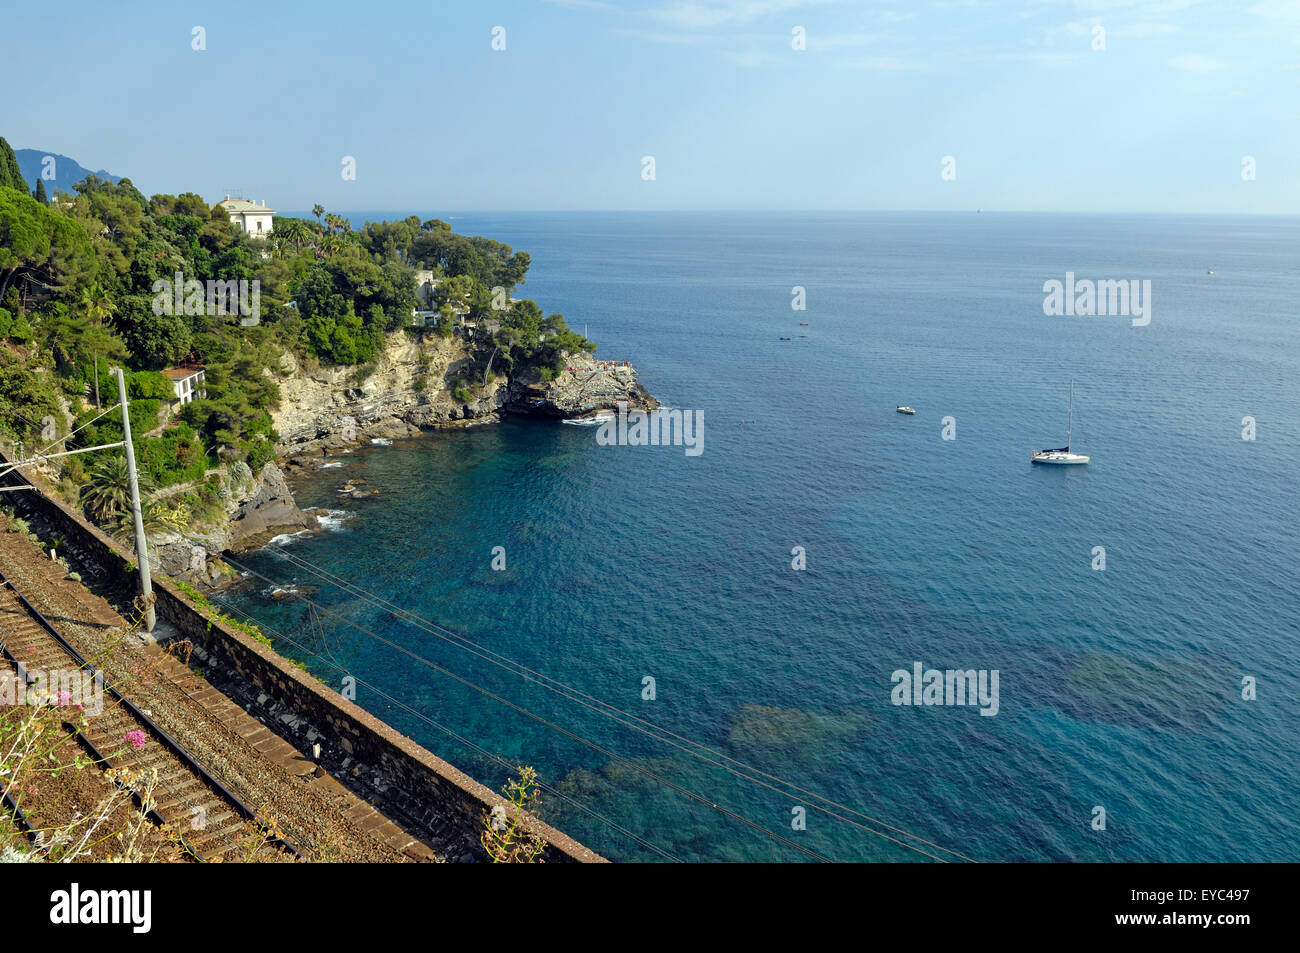 einen Einblick in die wilde Küste Liguriens in der Nähe von Pieve Ligure Stockfoto